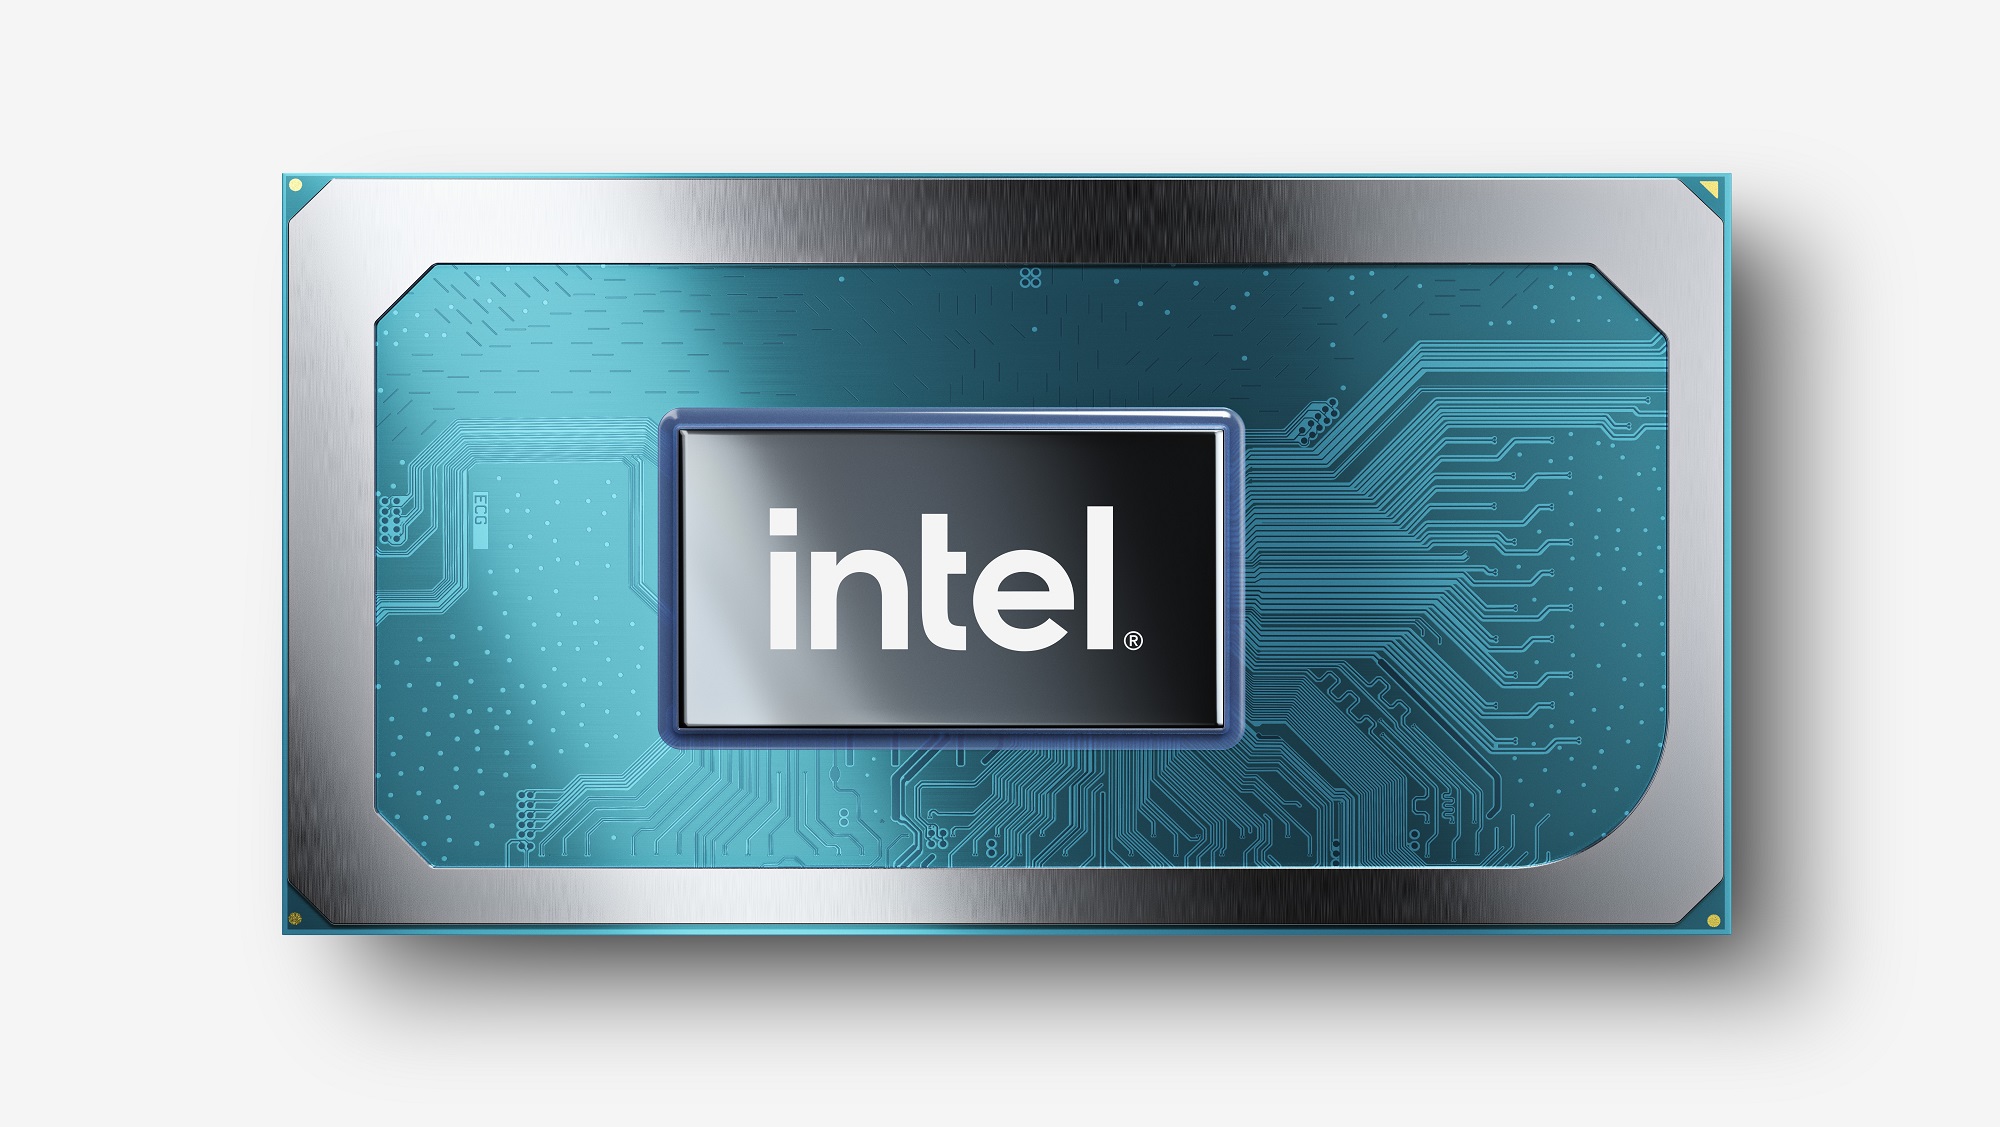 tgl h45 ang01 16 v01 1 อินเทลเปิดตัว Intel Core เจนเนอเรชั่นที่ 11 สำหรับแล็ปท็อป ในรหัส “Tiger Lake H” และ Intel Xeon W 11000 series เจนเนอเรชั่นที่ 11 รุ่นใหม่ล่าสุดอย่างเป็นทางการ 